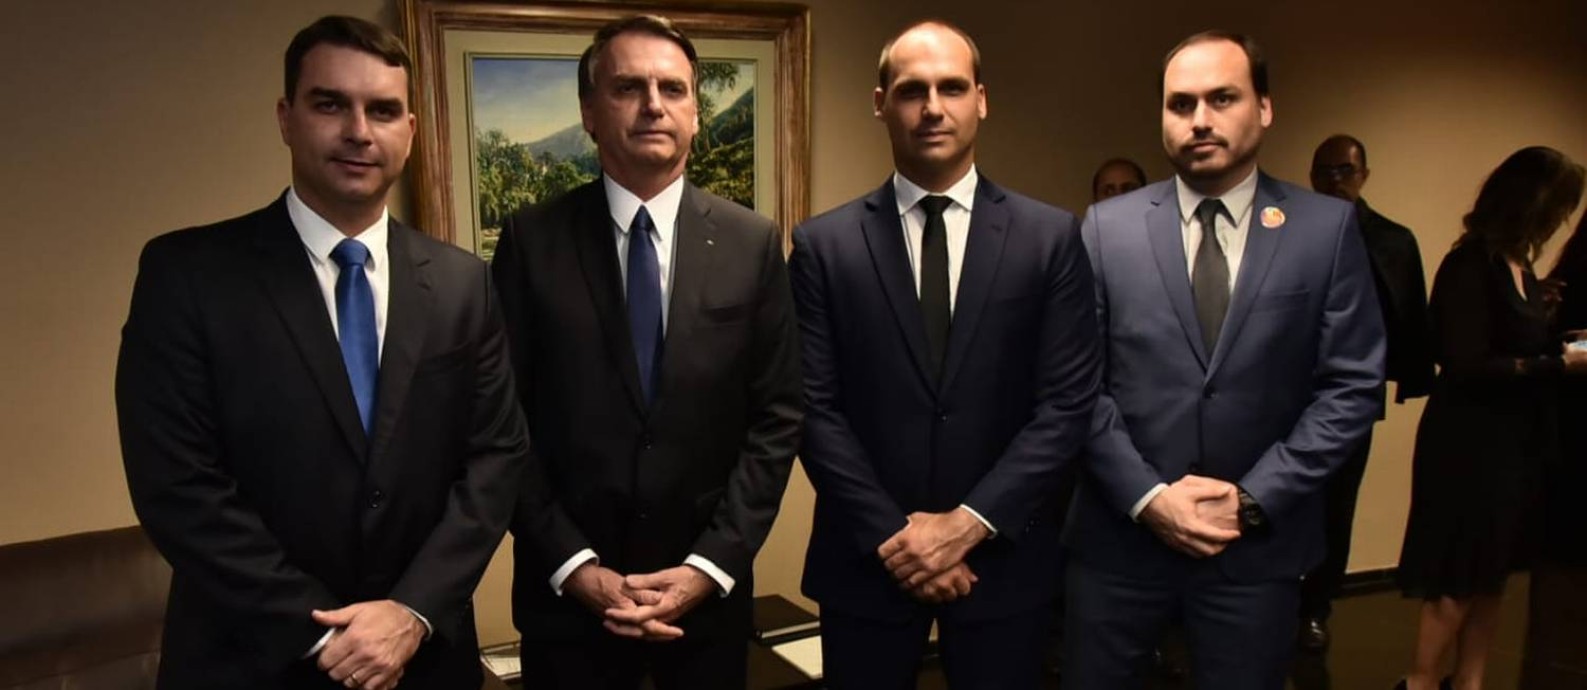 Clã Bolsonaro: Flávio, Jair, Eduardo e Carlos Foto: Reprodução